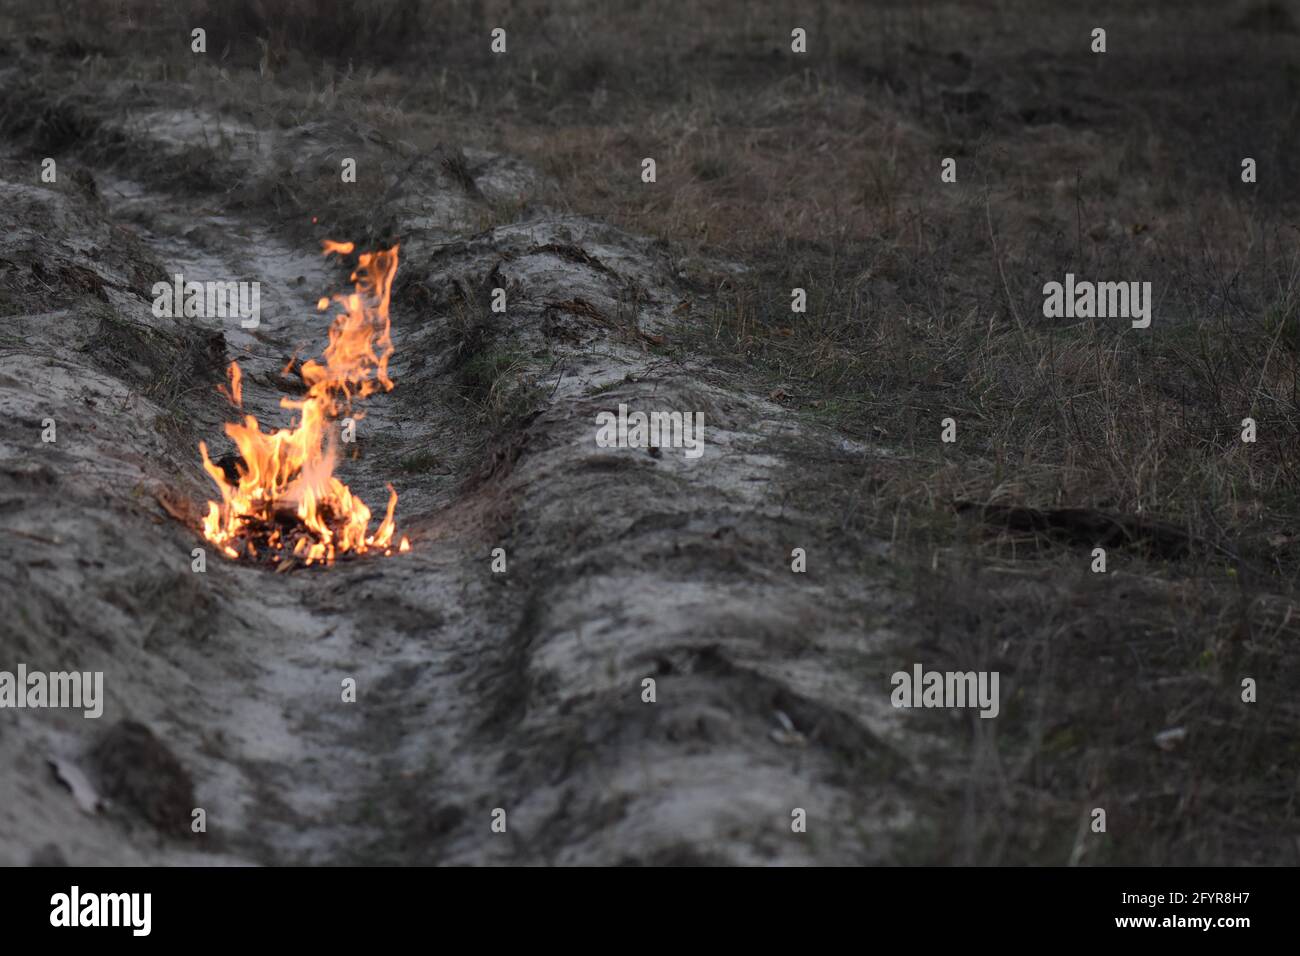 Le feu flamboyant de brindilles brûlantes et de bois de chauffage sur le champ sec Banque D'Images